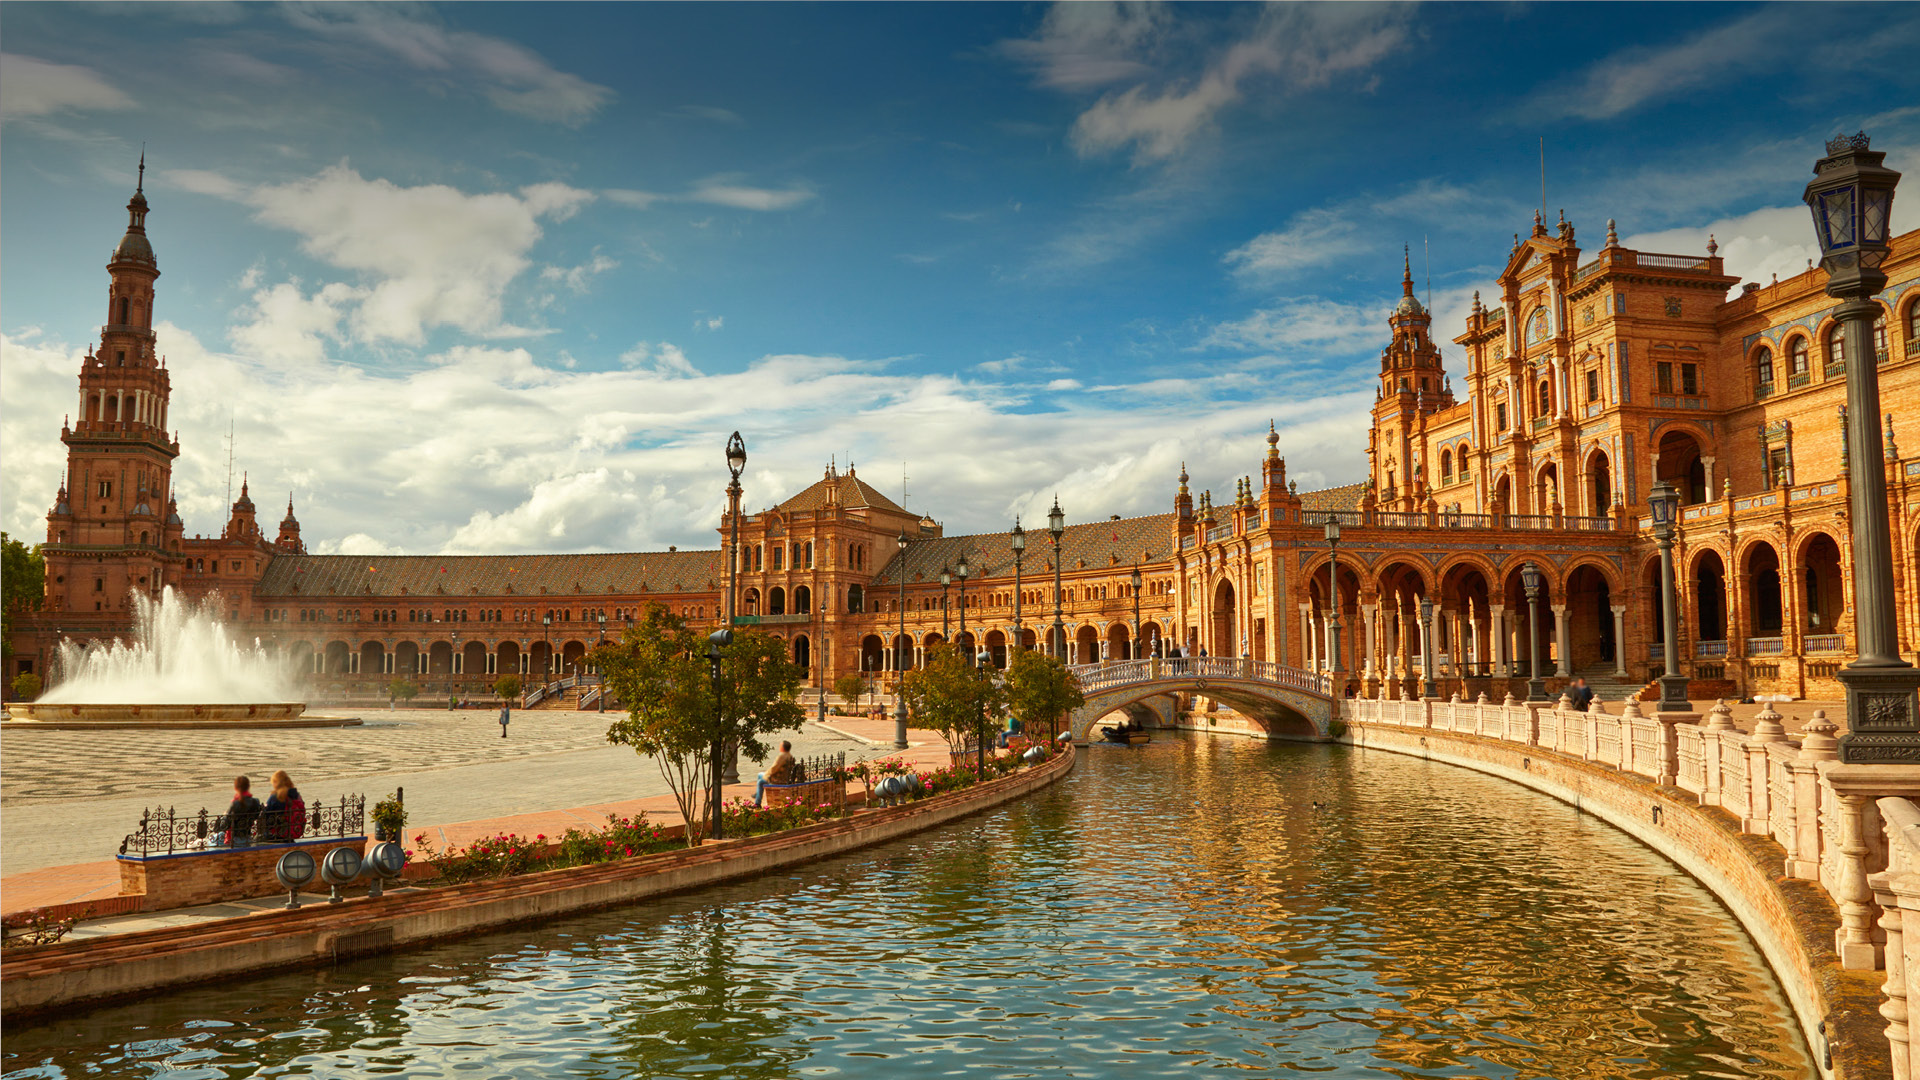 L'histoire de l'Alhambra, chef-d'oeuvre de l'architecture hispano